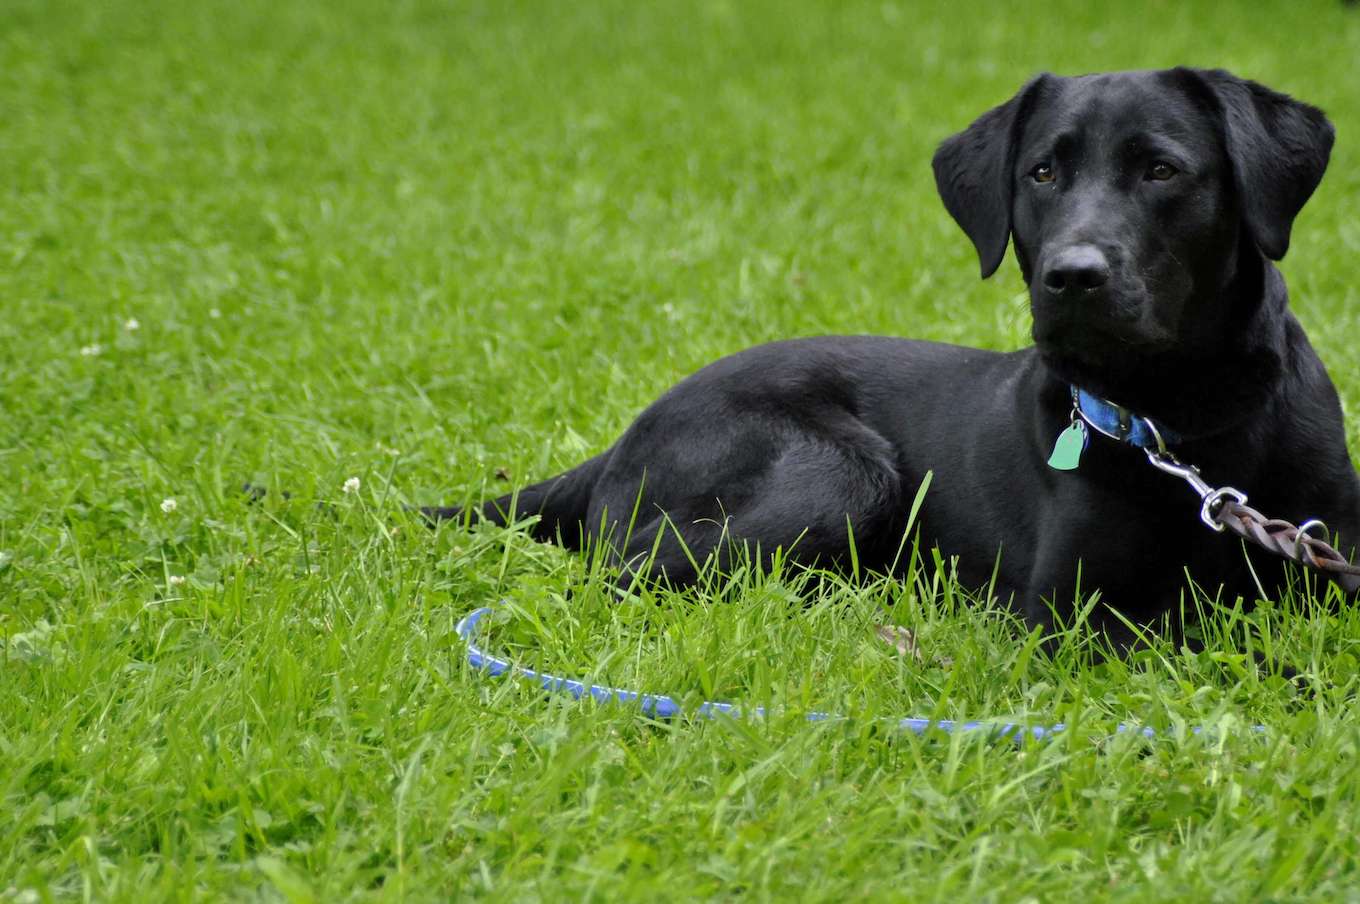 Una foto de un perro negro rodeado de hierba verde para demostrar el uso de un fondo simple en la fotografía de mascotas.